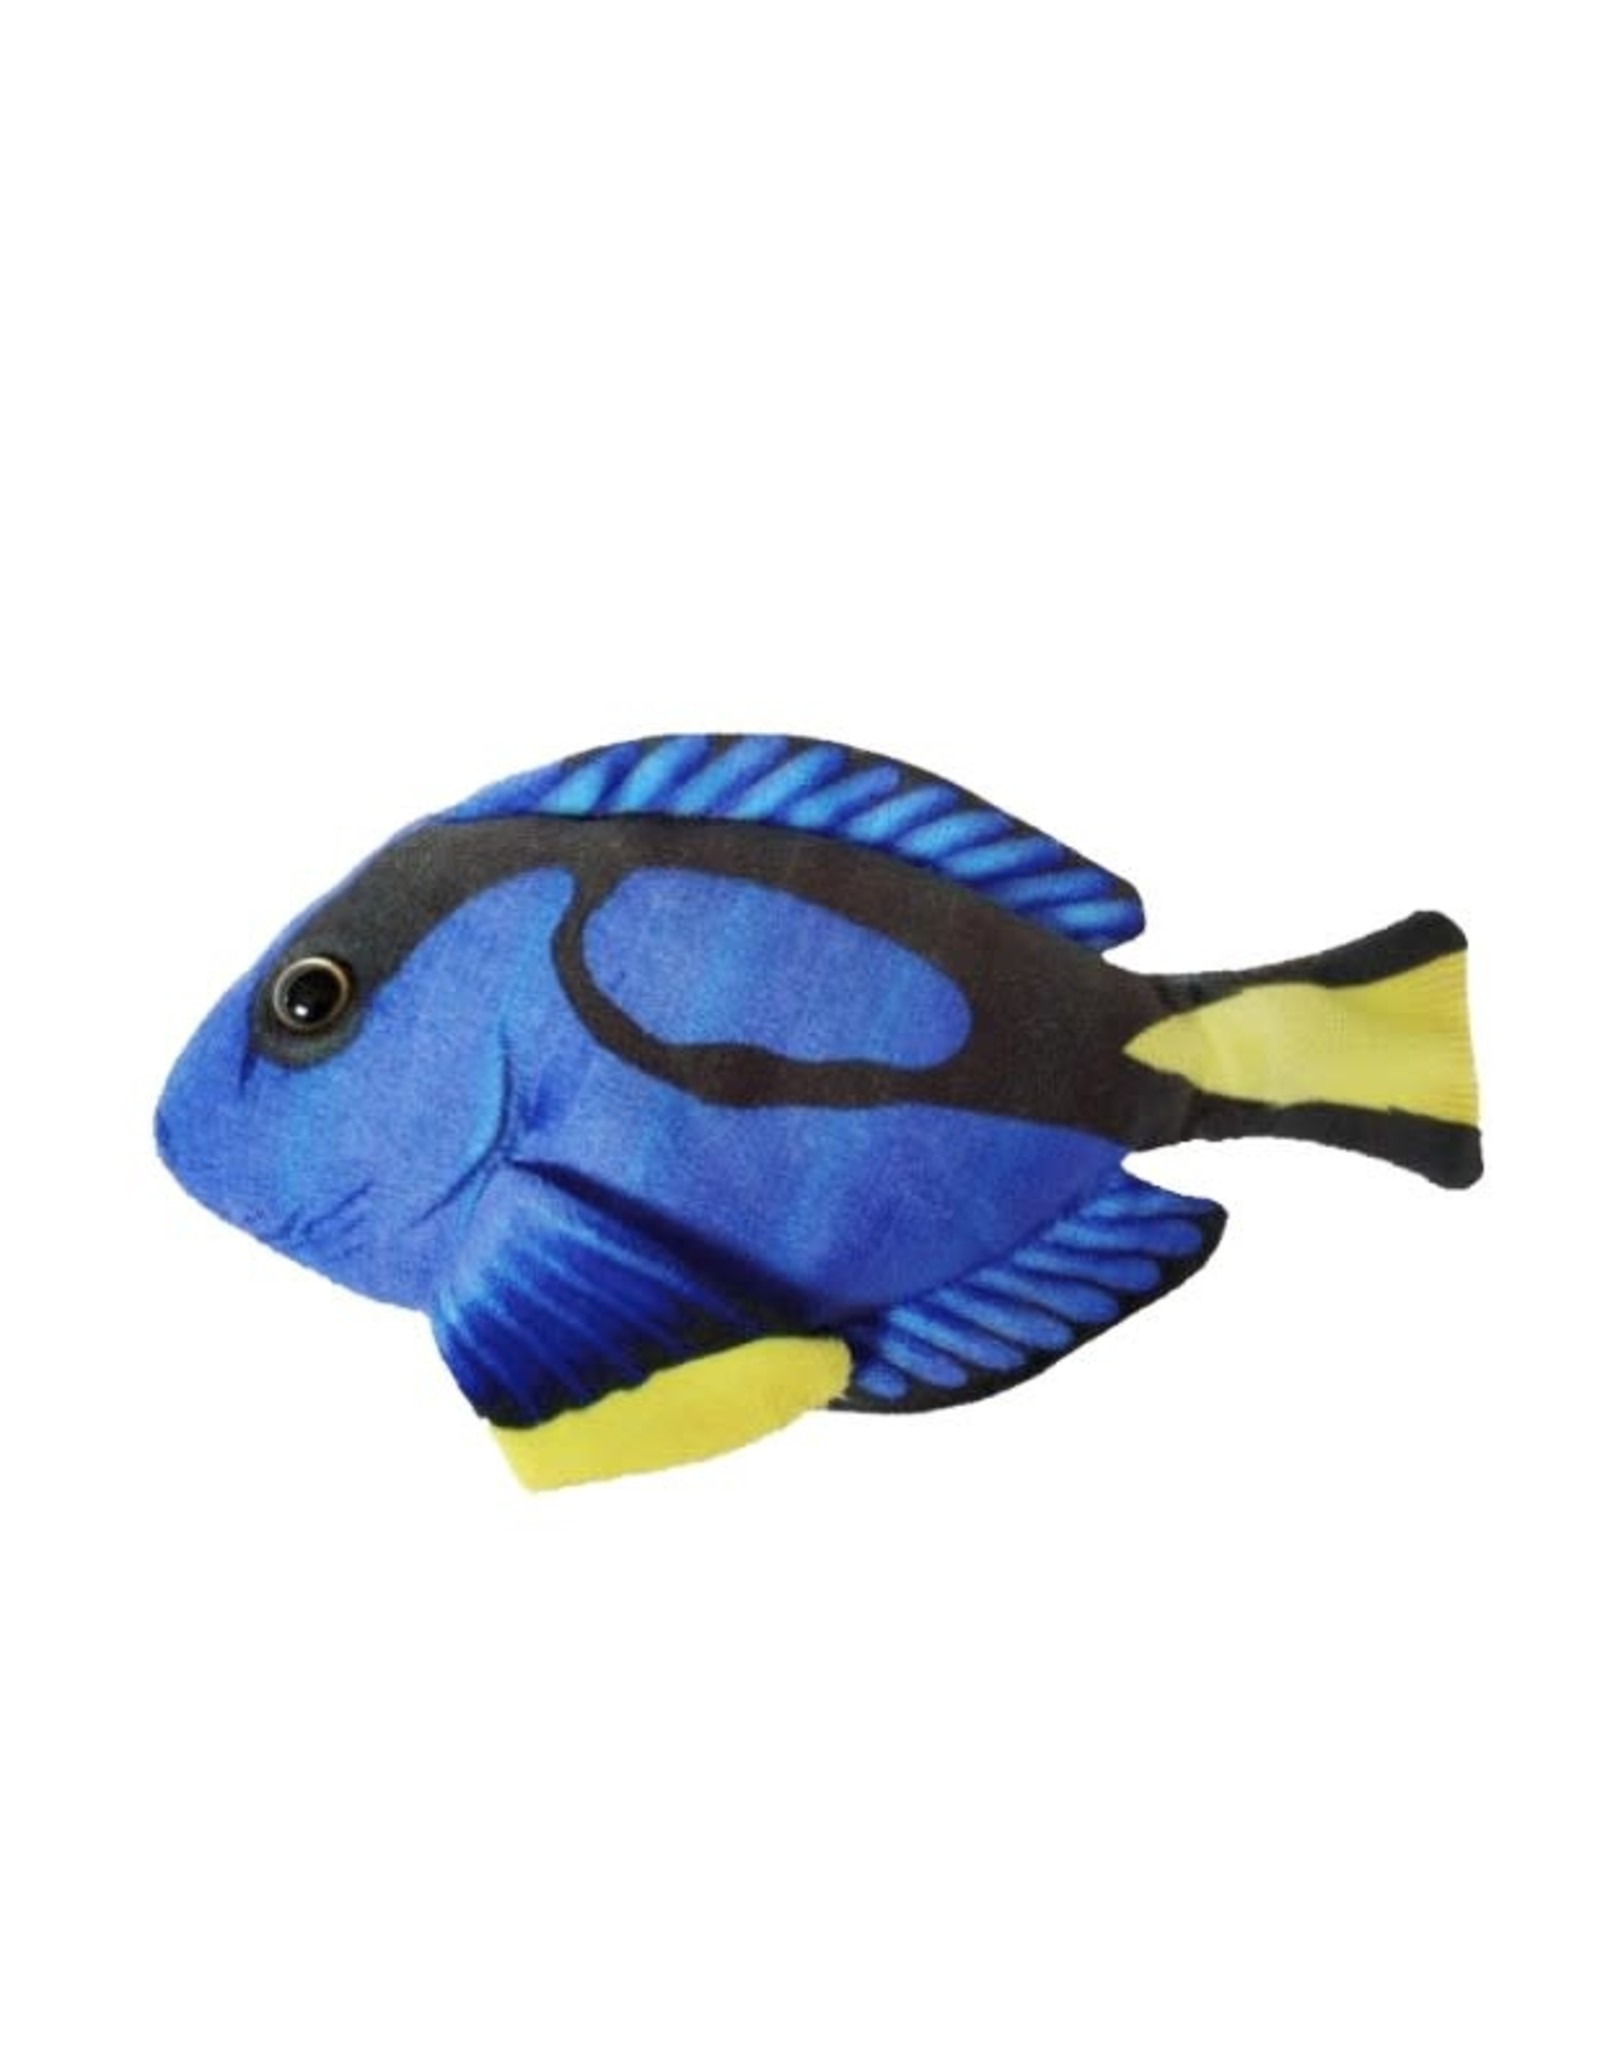 Blue Tang Fish 7.5"